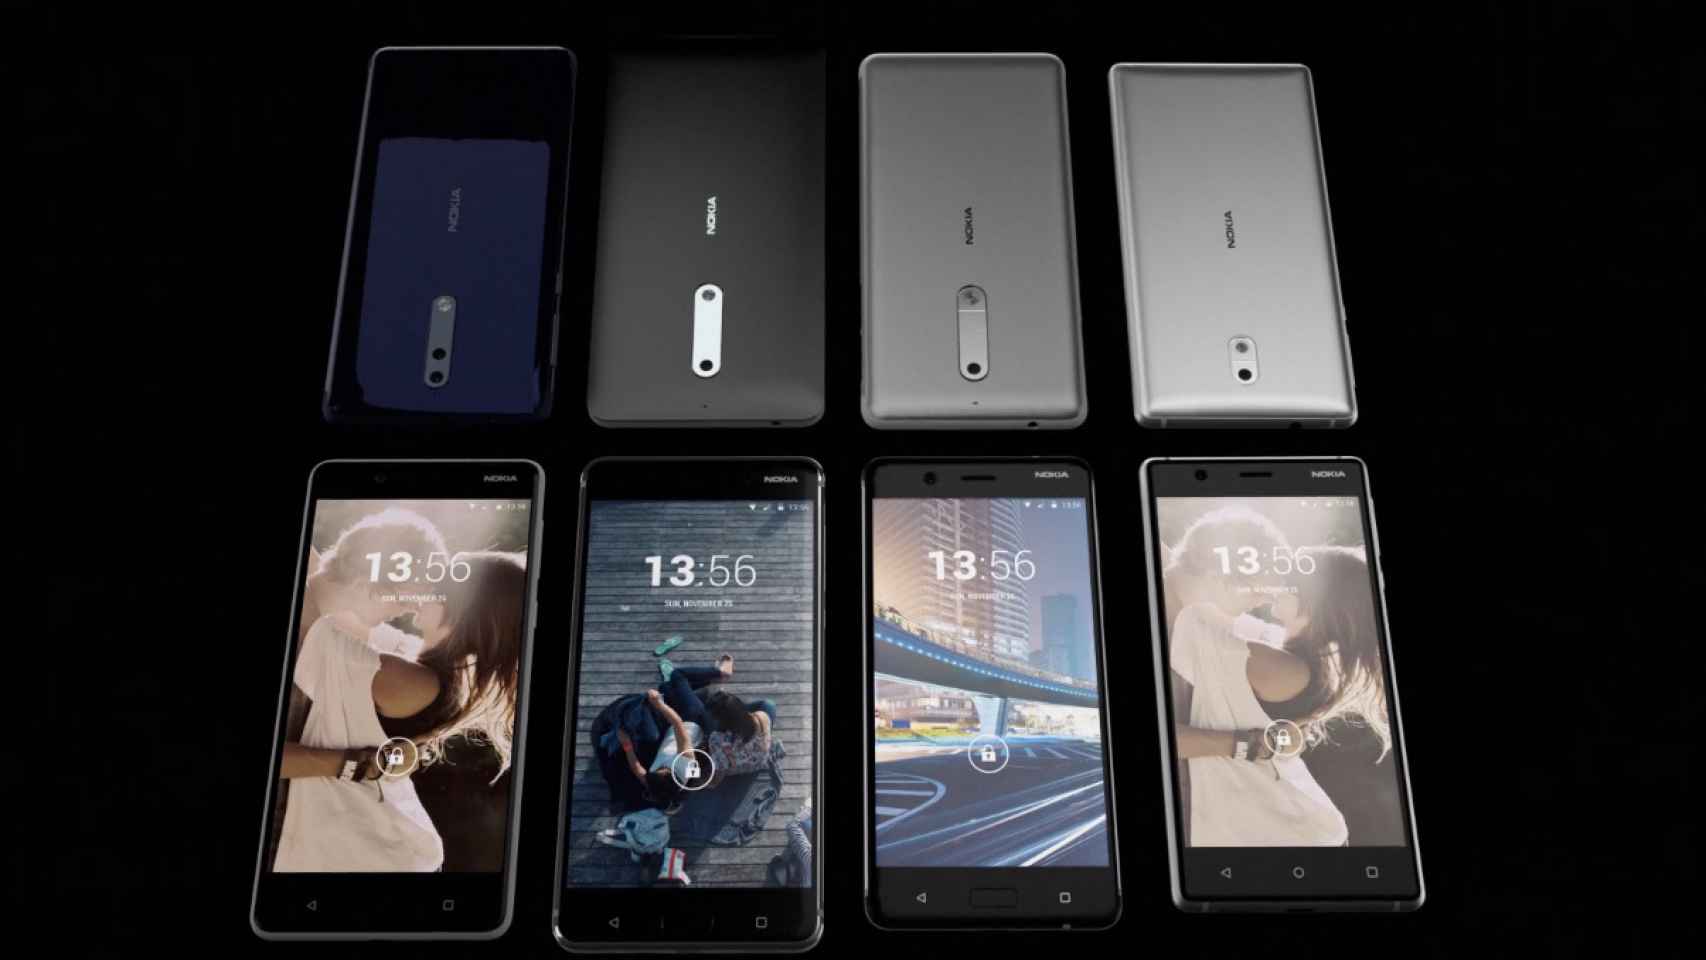 Ya conocemos todos los Nokia con Android gracias a sus procesadores filtrados